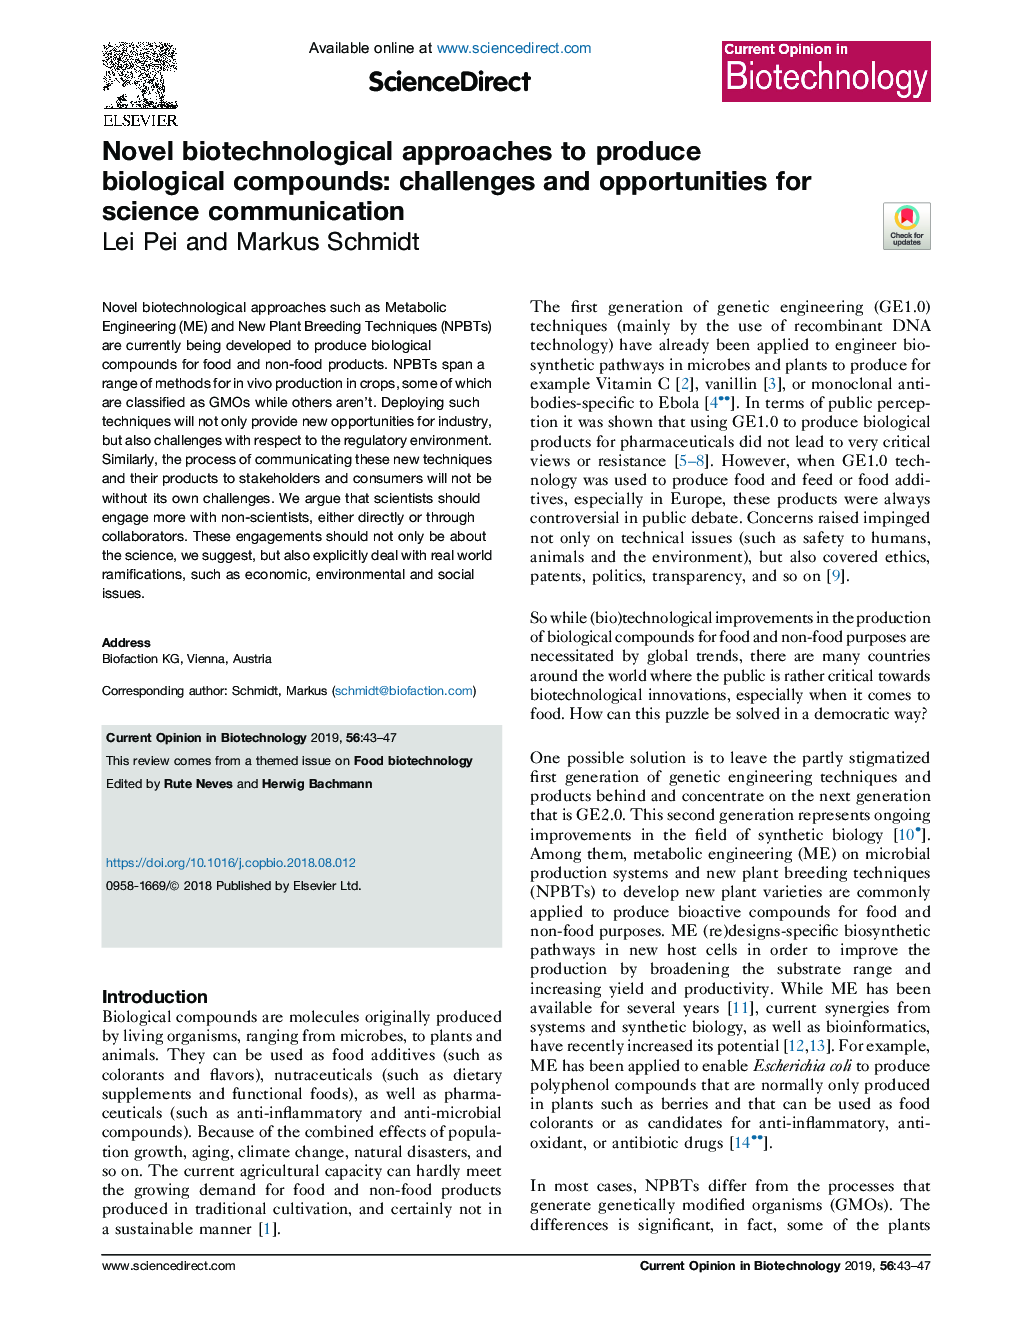 روشی بیوتکنولوژی نوین برای تولید ترکیبات بیولوژیکی: چالش ها و فرصت های ارتباطات علمی